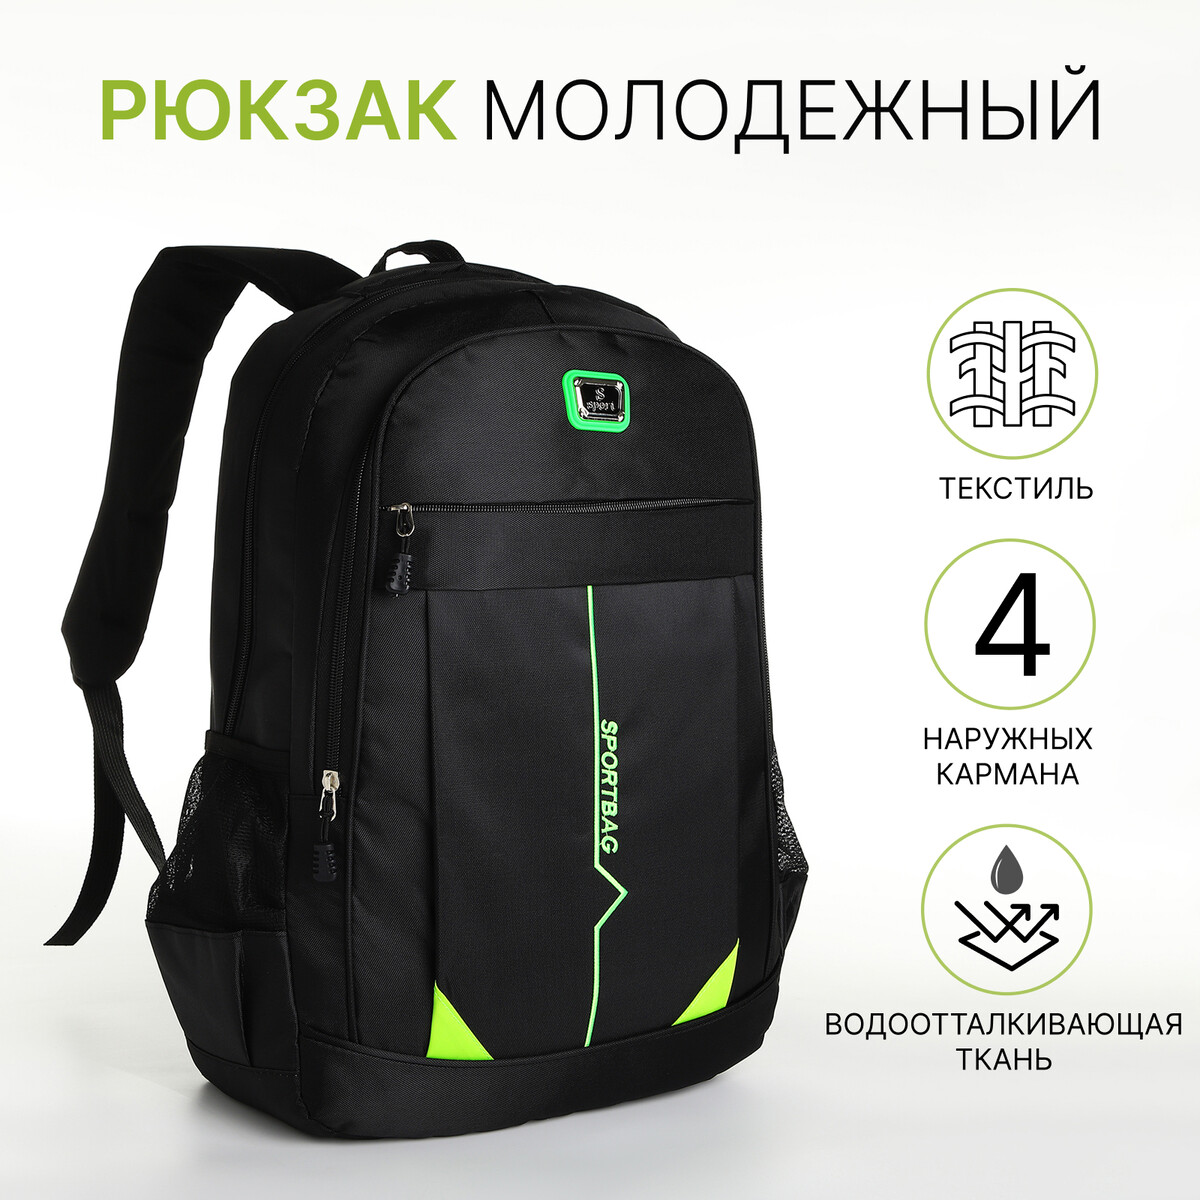 Рюкзак молодежный на молнии, 4 кармана, цвет черный/зеленый рюкзак молодежный из текстиля на молнии 3 кармана зеленый